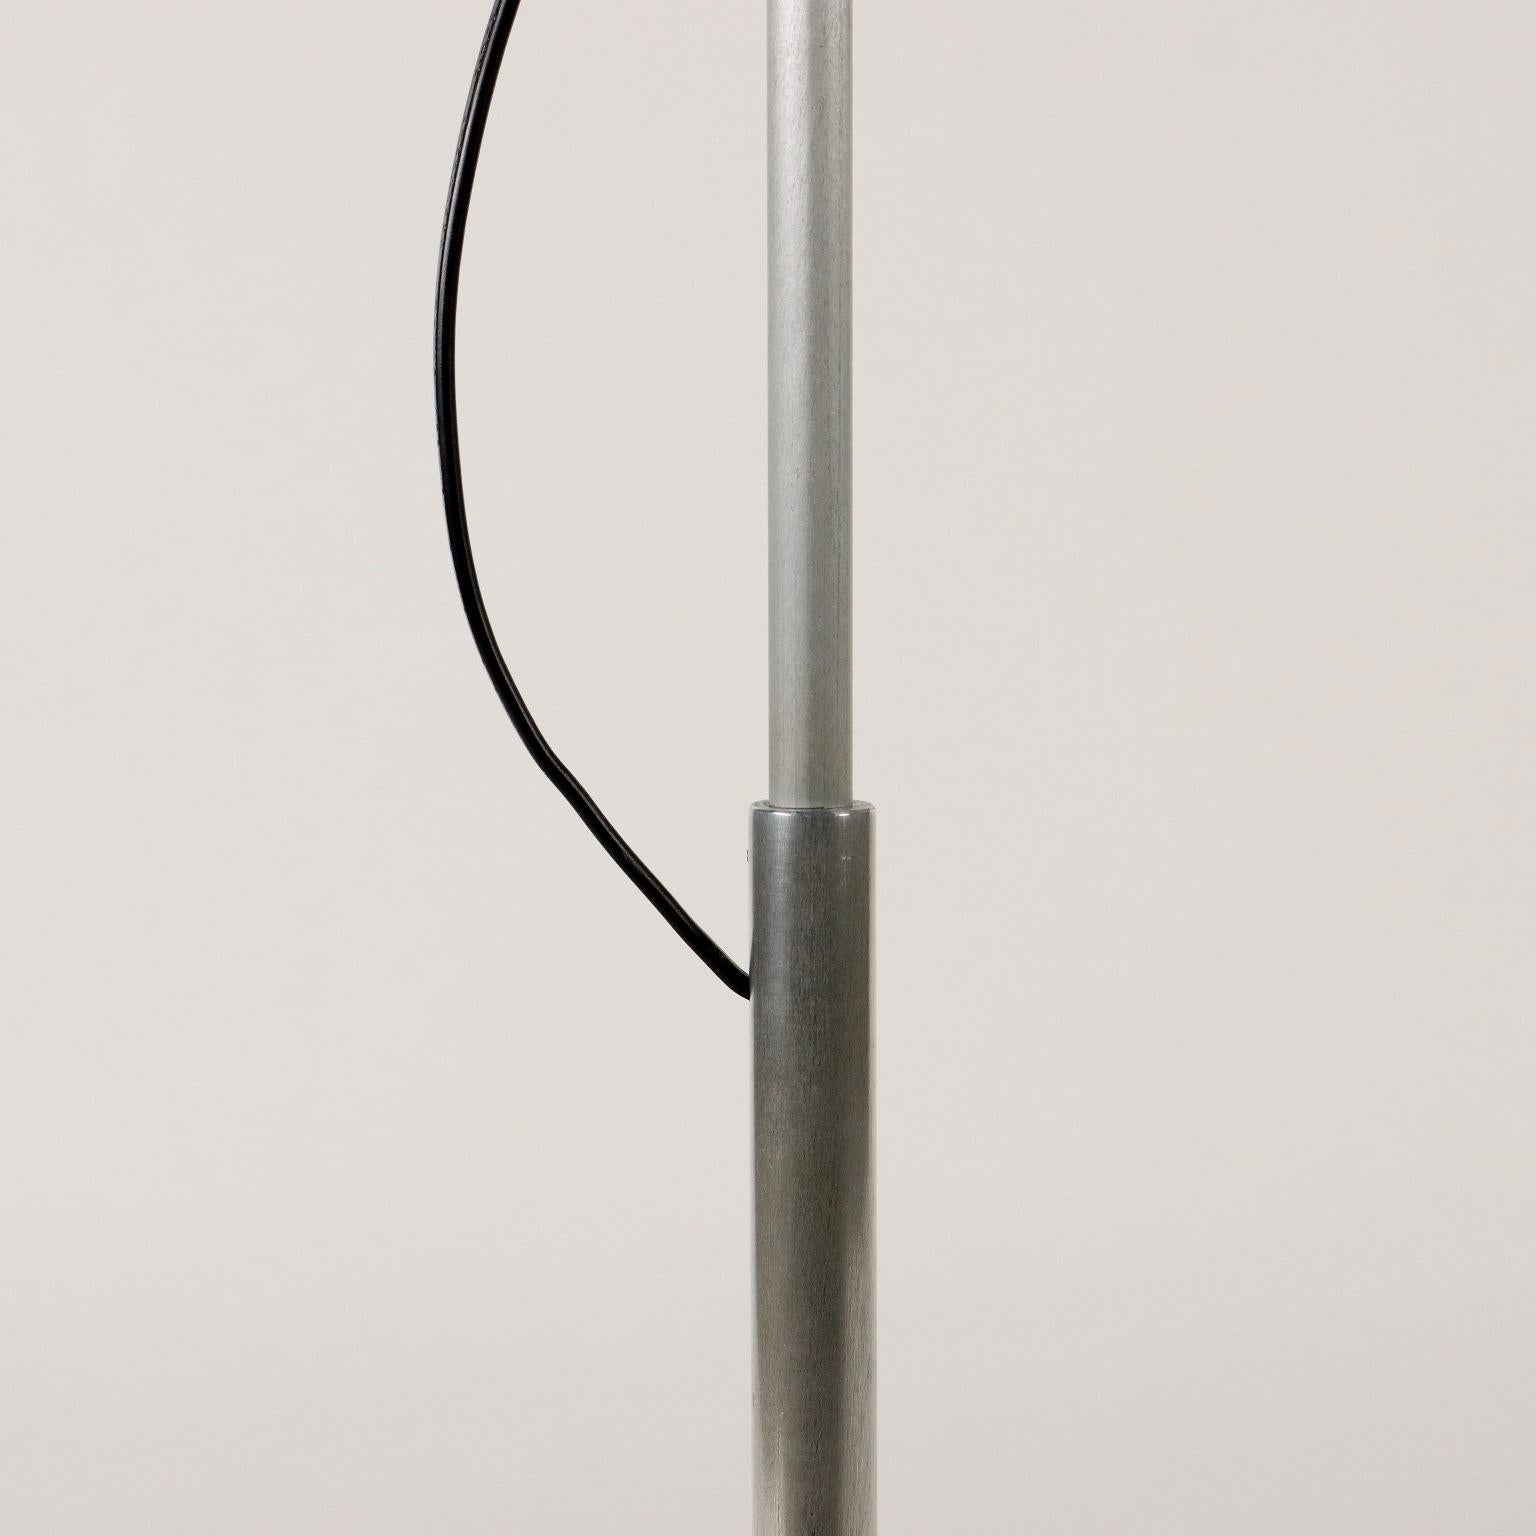 Stehlampe aus Aluminium, Italien, 1960er Jahre (Mitte des 20. Jahrhunderts)